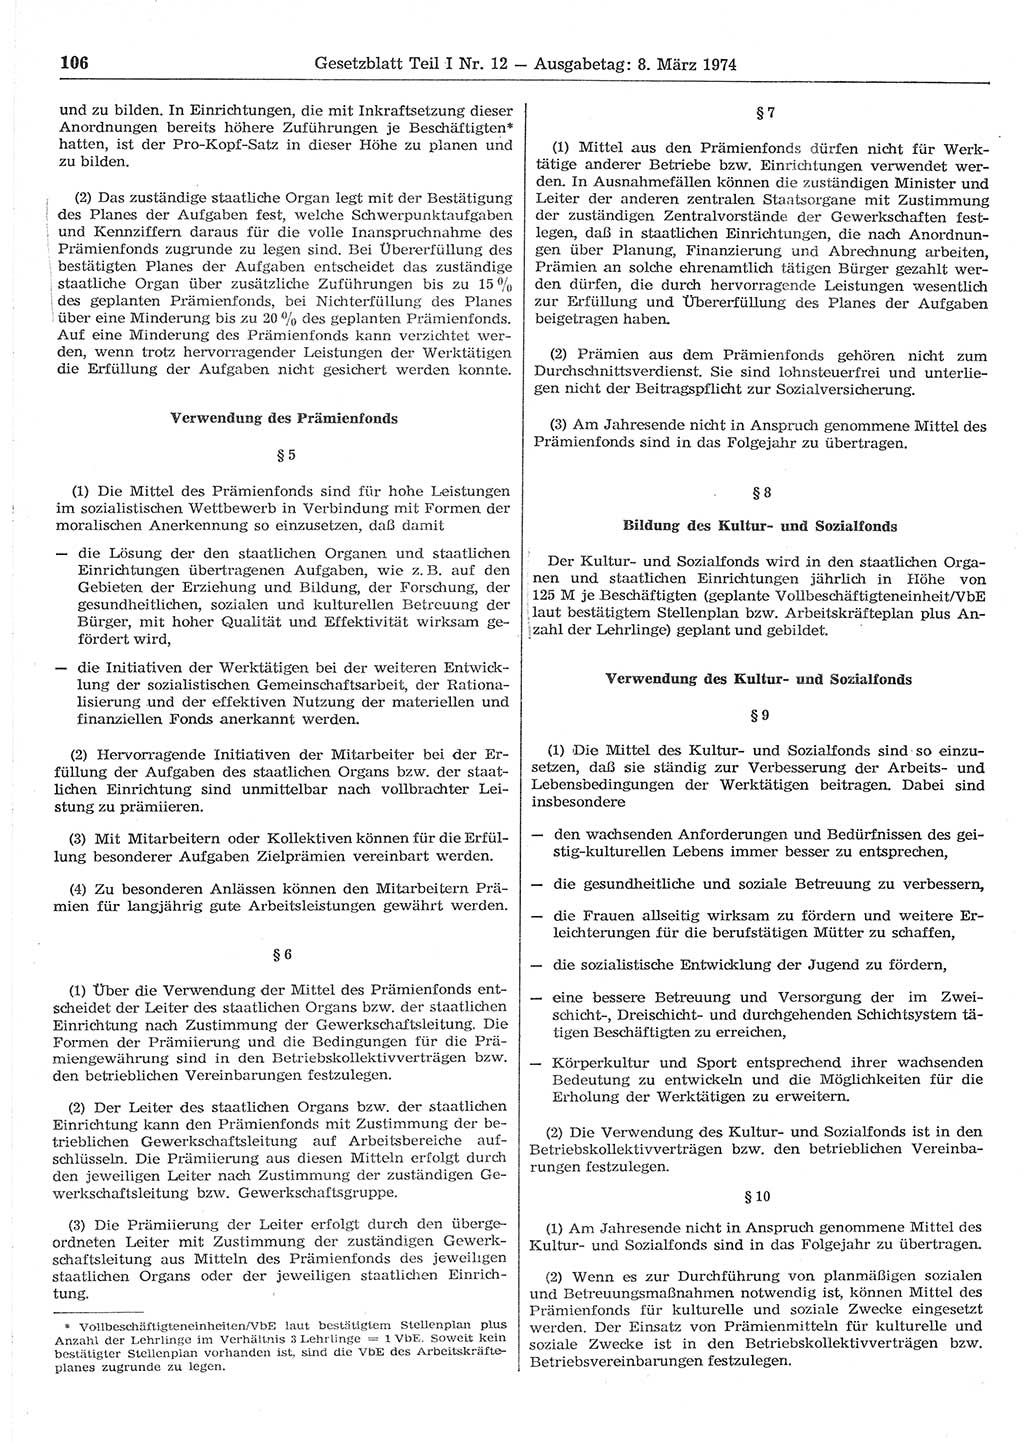 Gesetzblatt (GBl.) der Deutschen Demokratischen Republik (DDR) Teil Ⅰ 1974, Seite 106 (GBl. DDR Ⅰ 1974, S. 106)